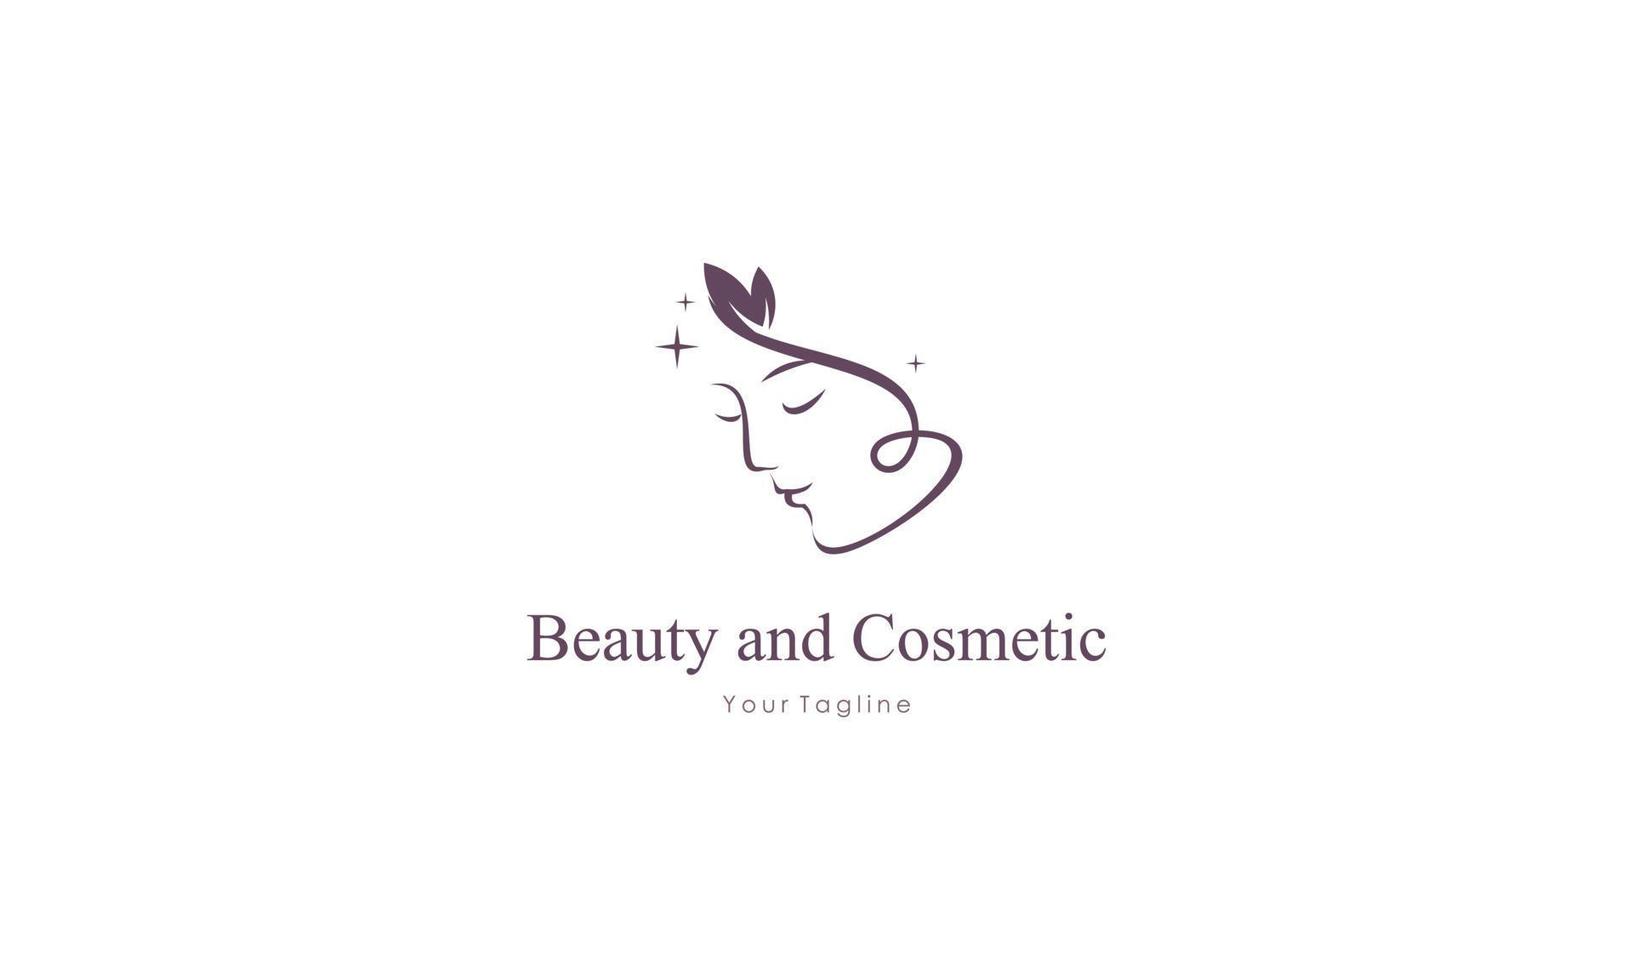 schoonheid vrouw mode logo vector